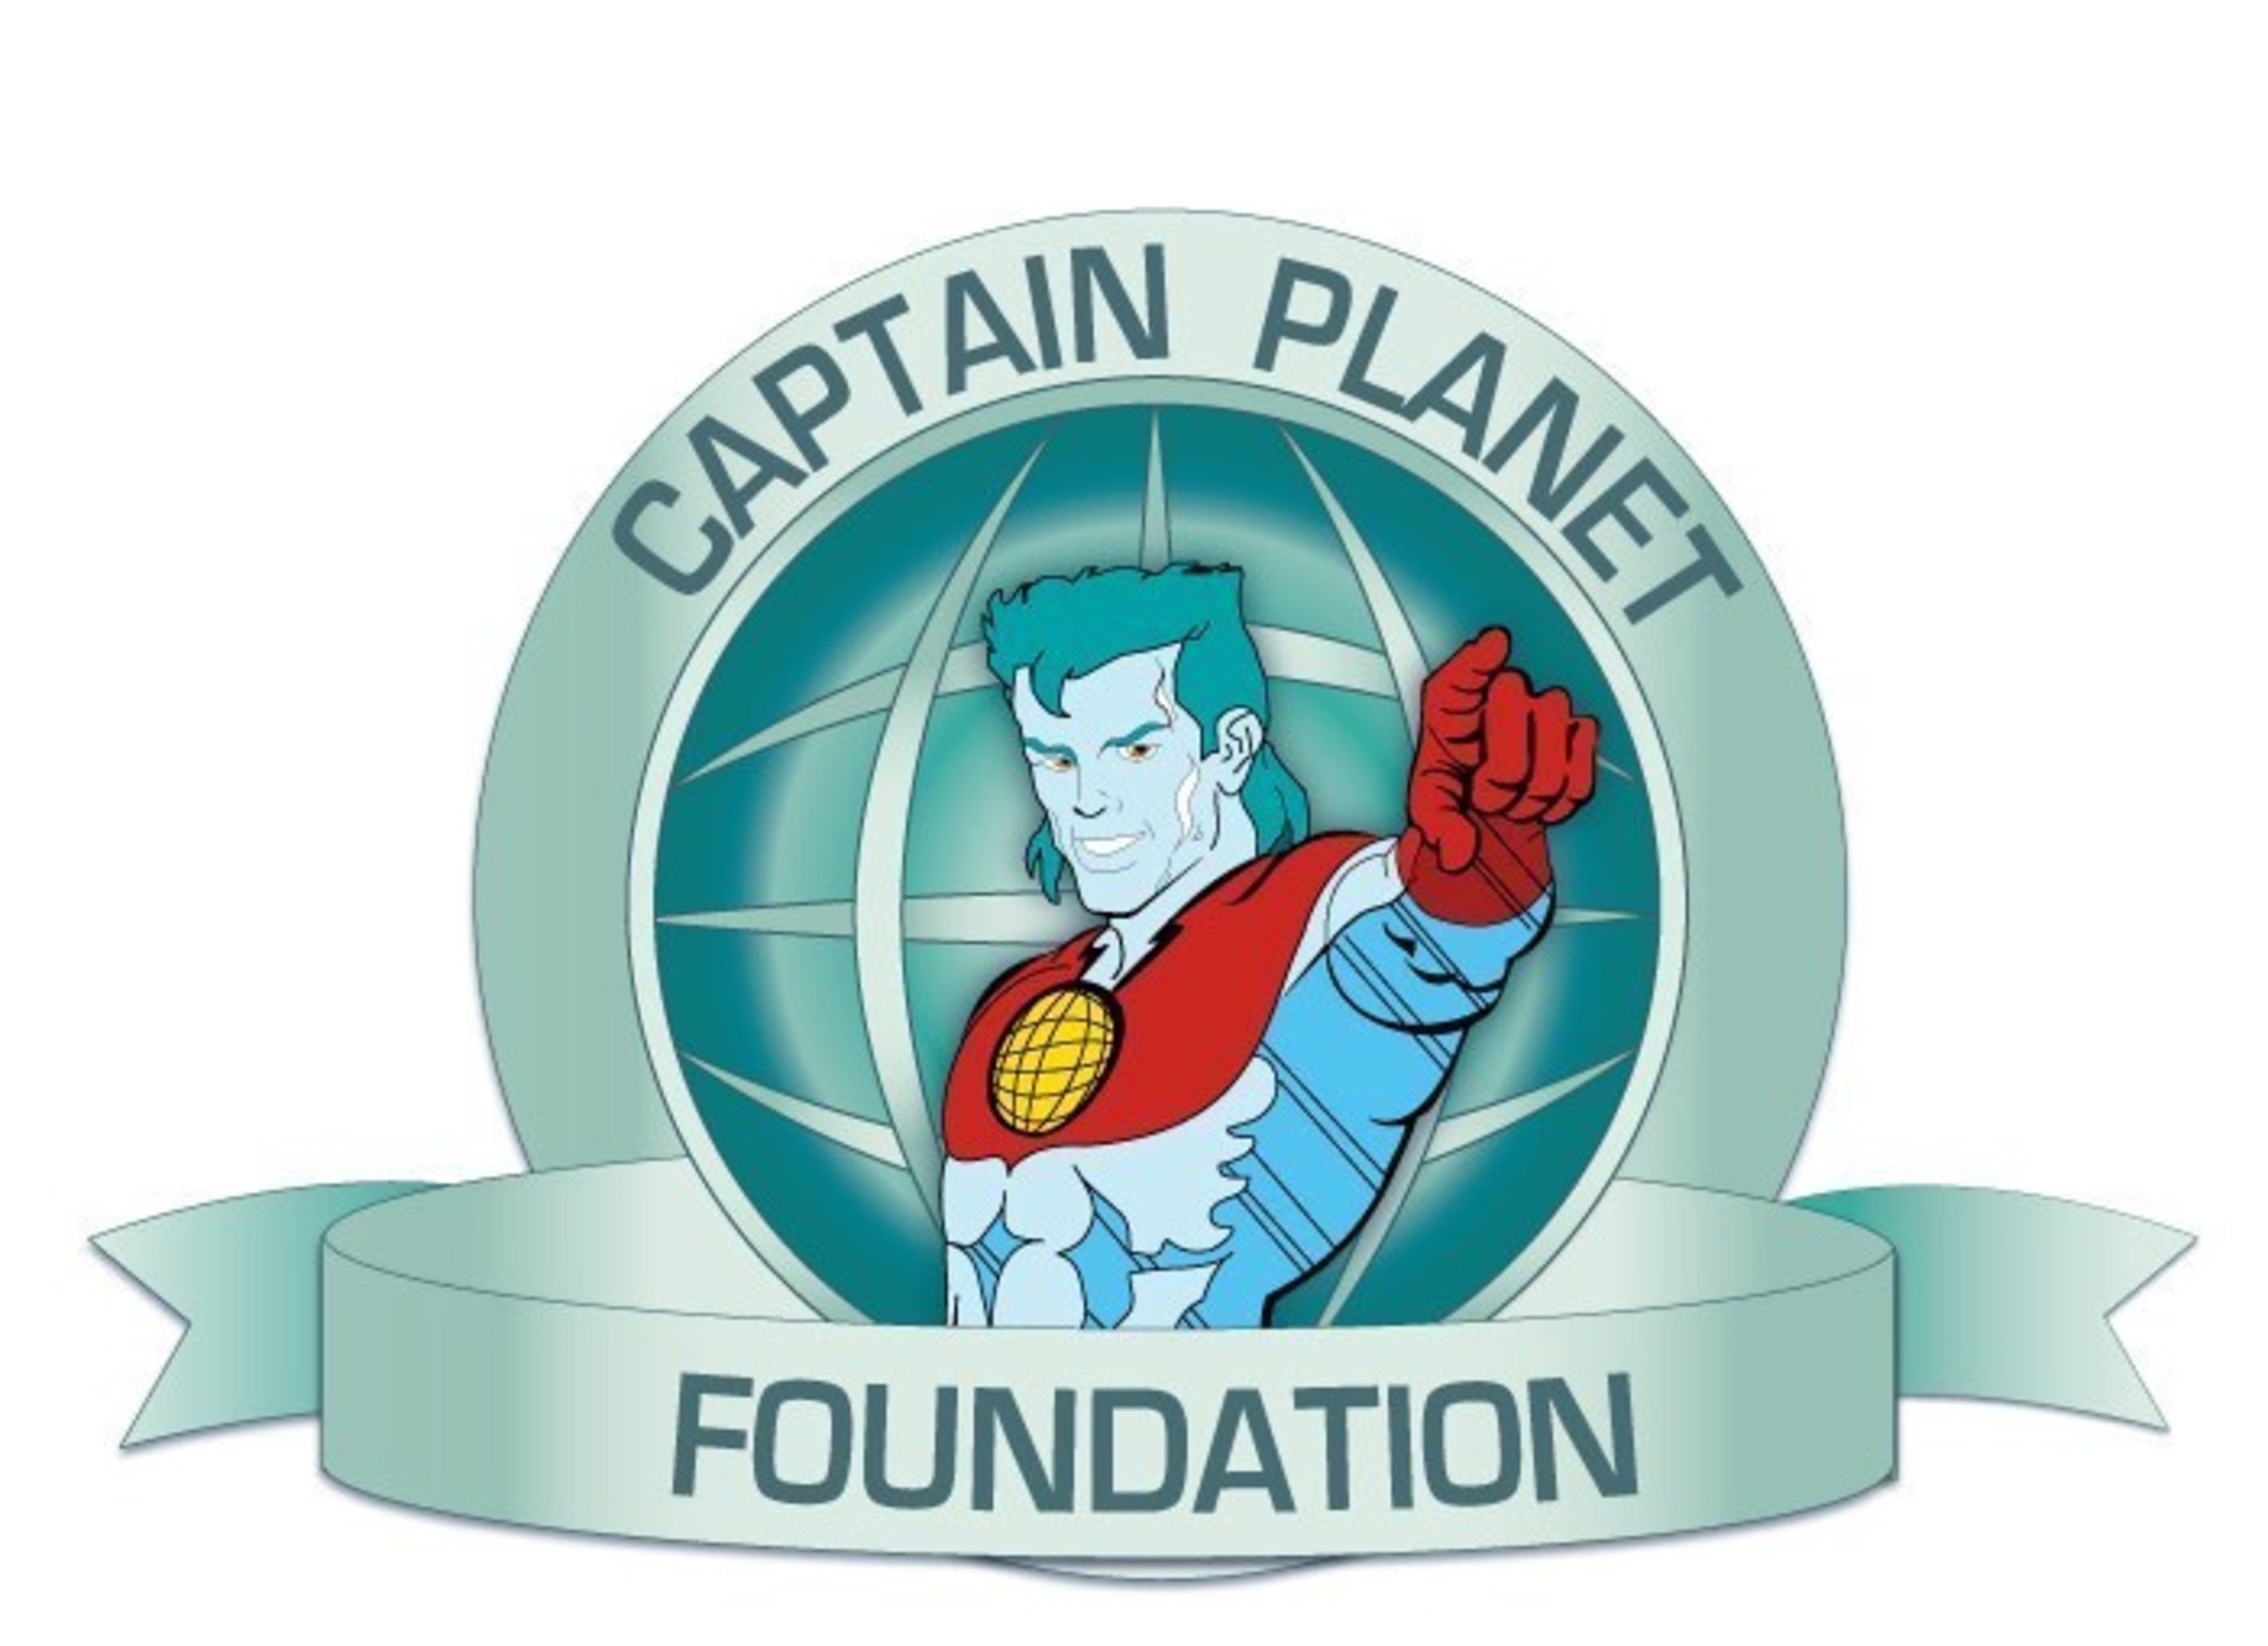 Captain Planet Foundation